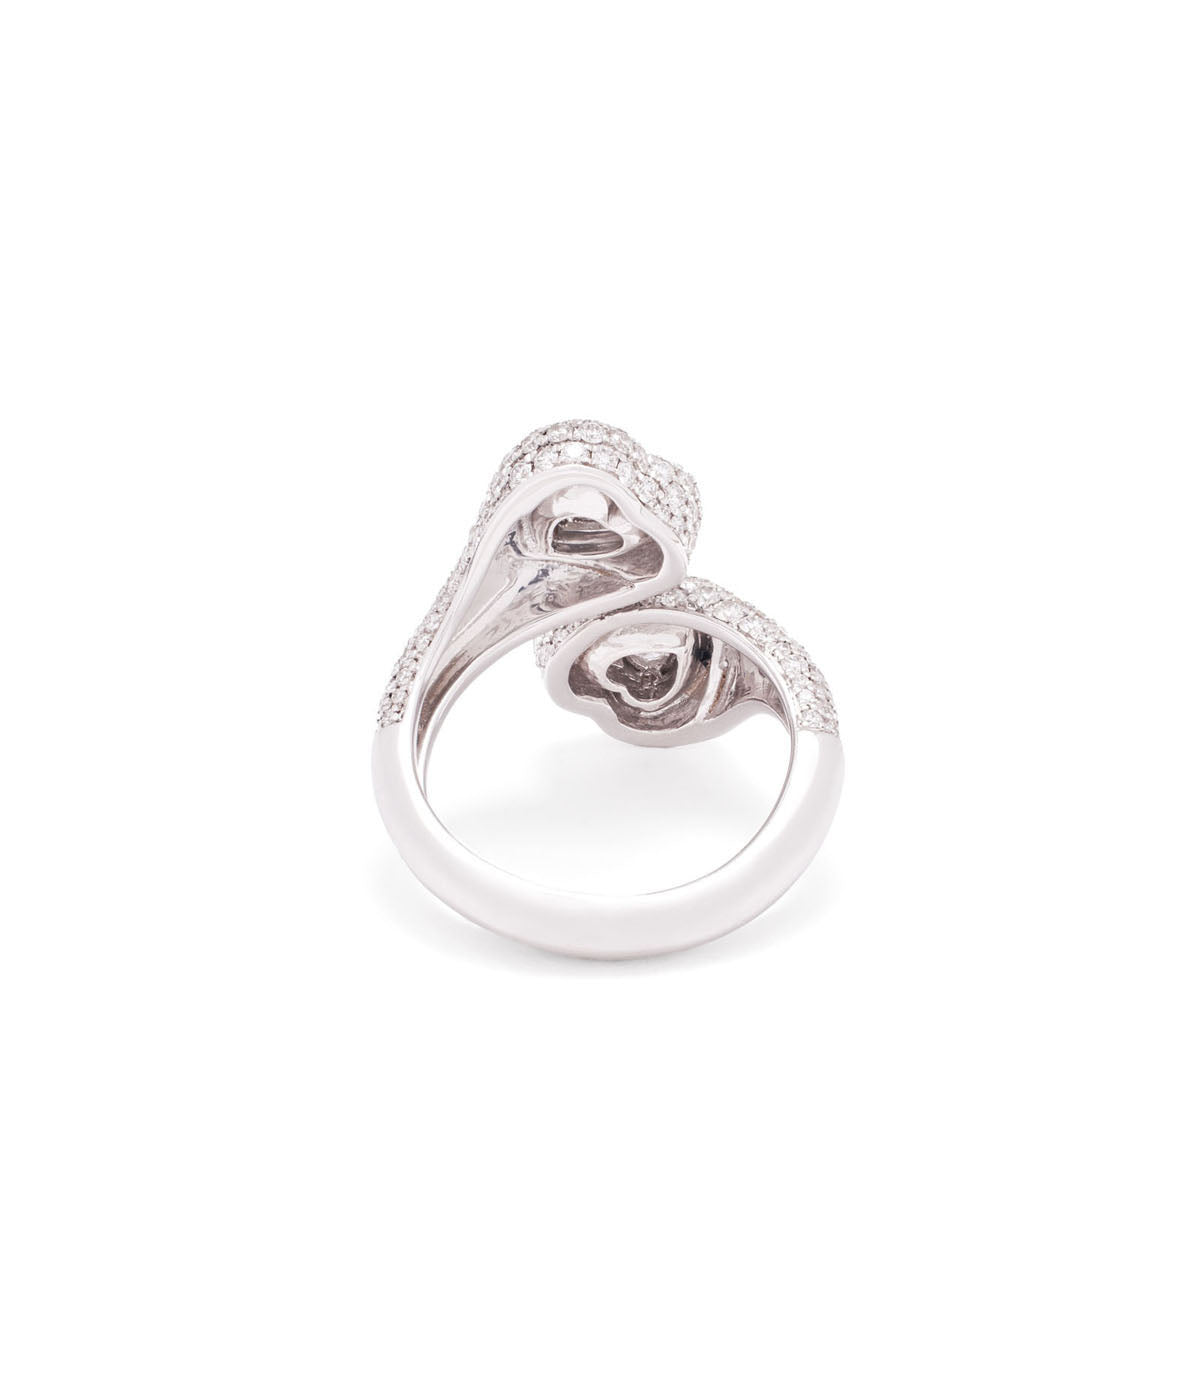 18k white gold gemini heart ring